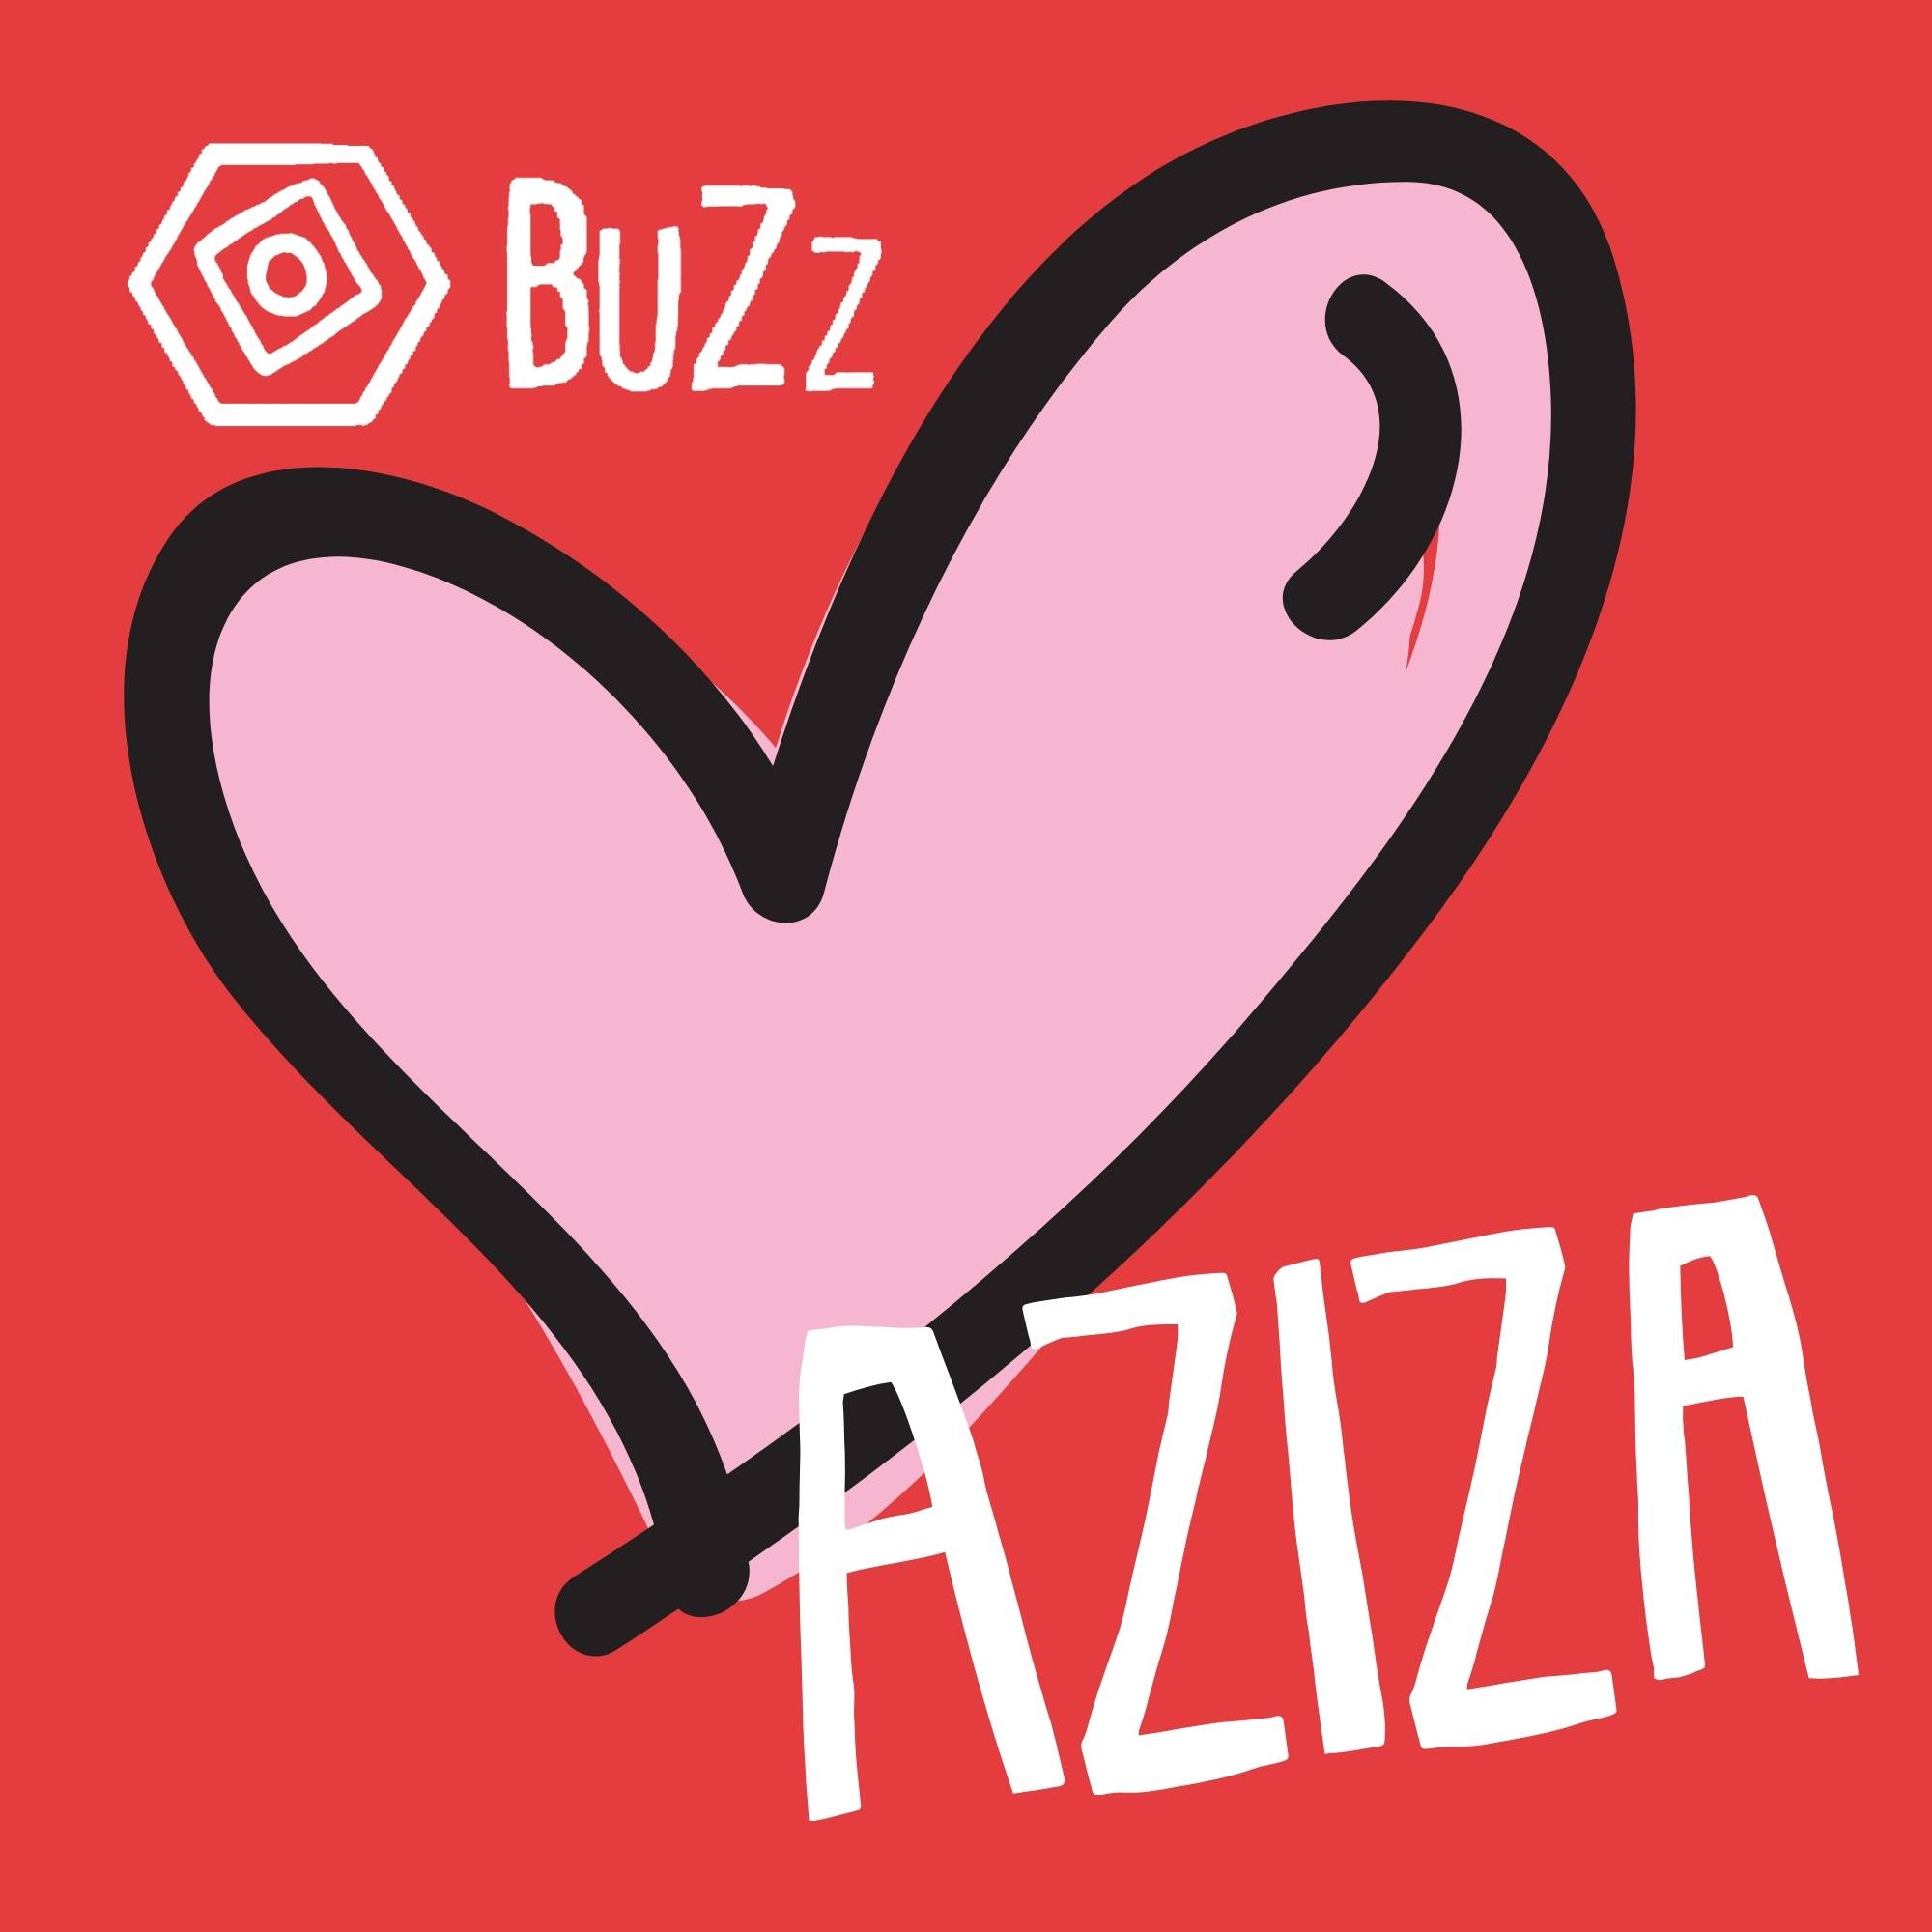 BuZz loves Aziza